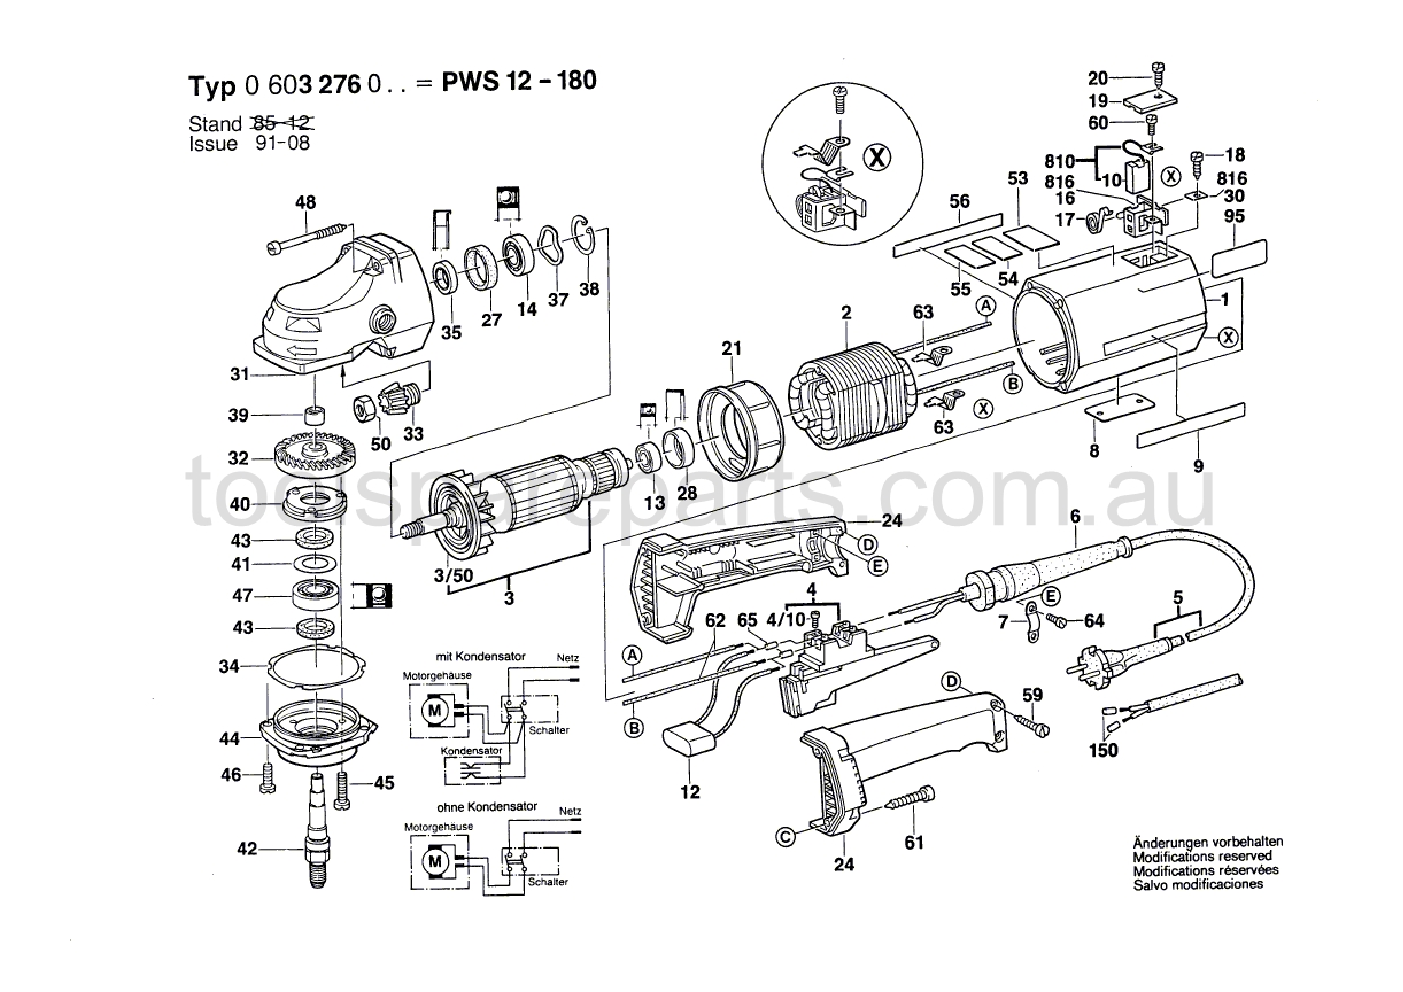 Bosch PWS 12-180 0603276037  Diagram 1